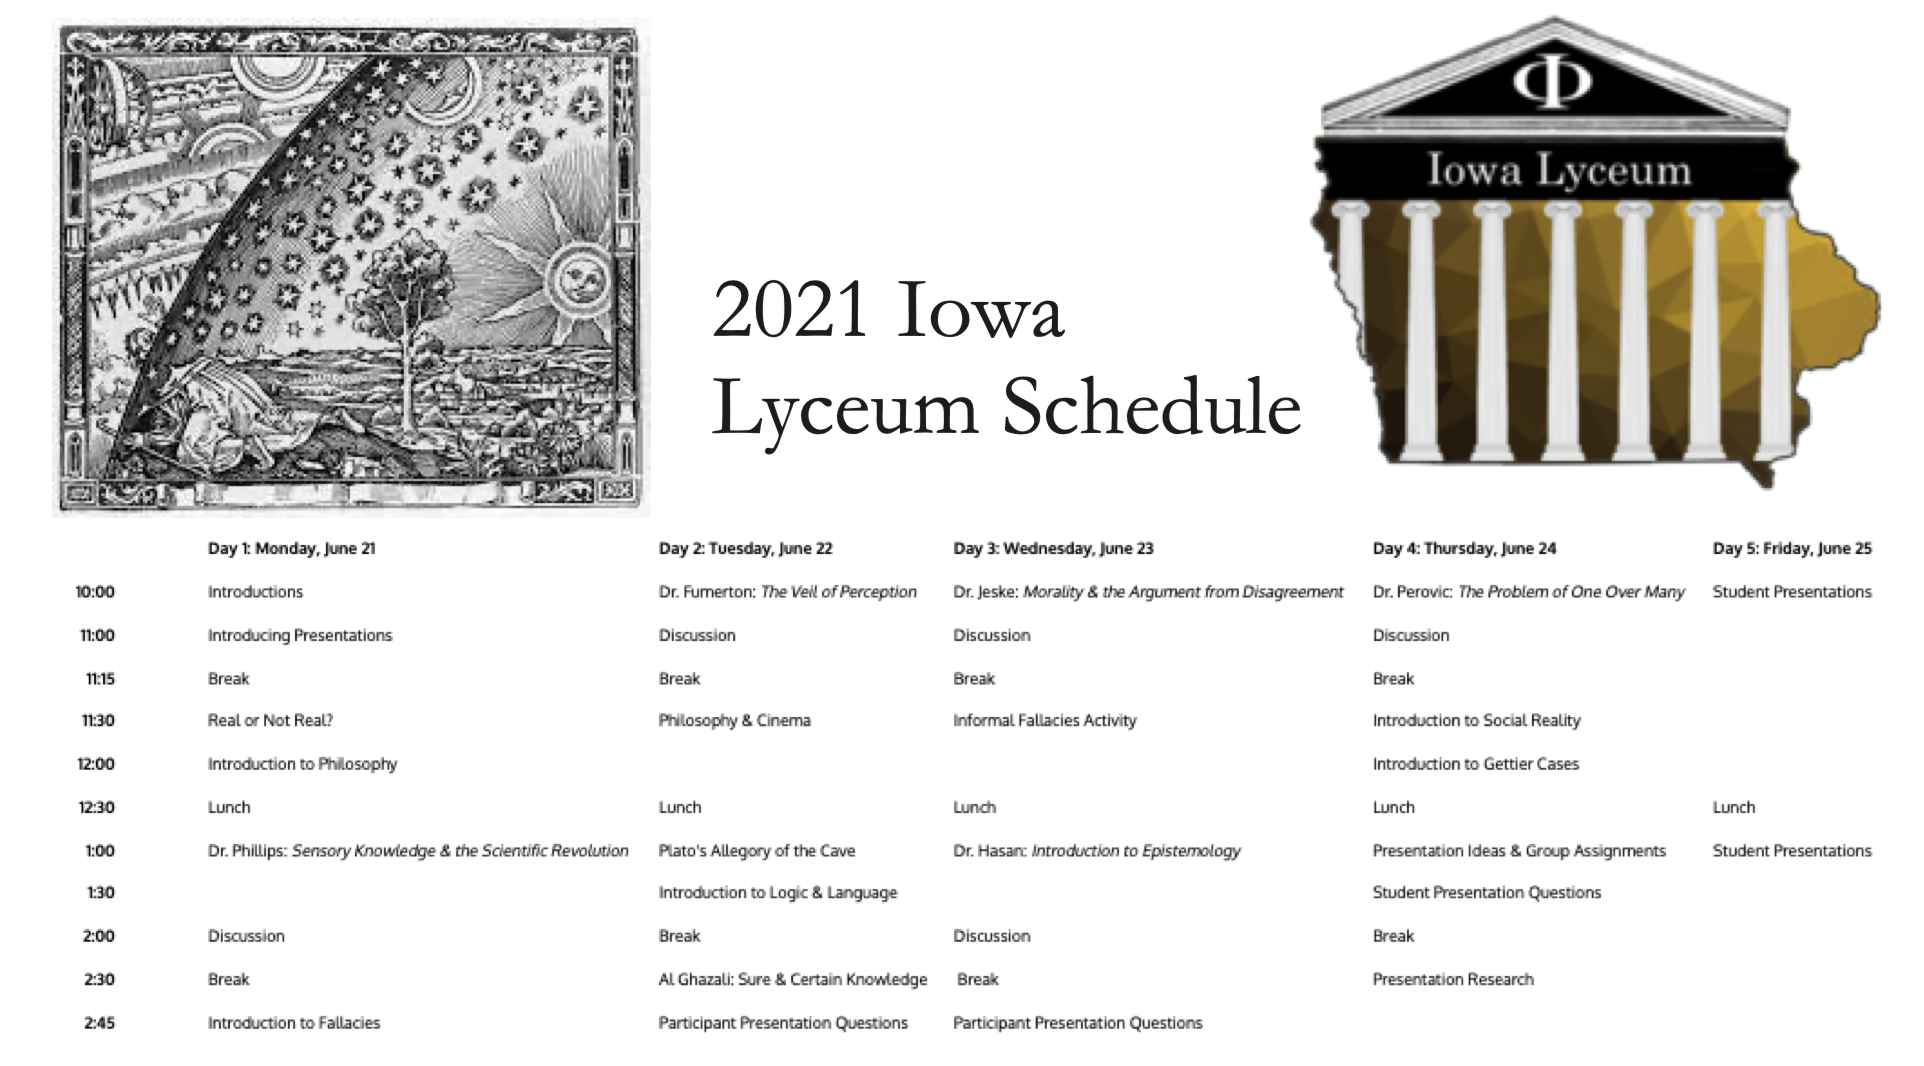 2021 Iowa Lyceum | Iowa Lyceum - The University of Iowa